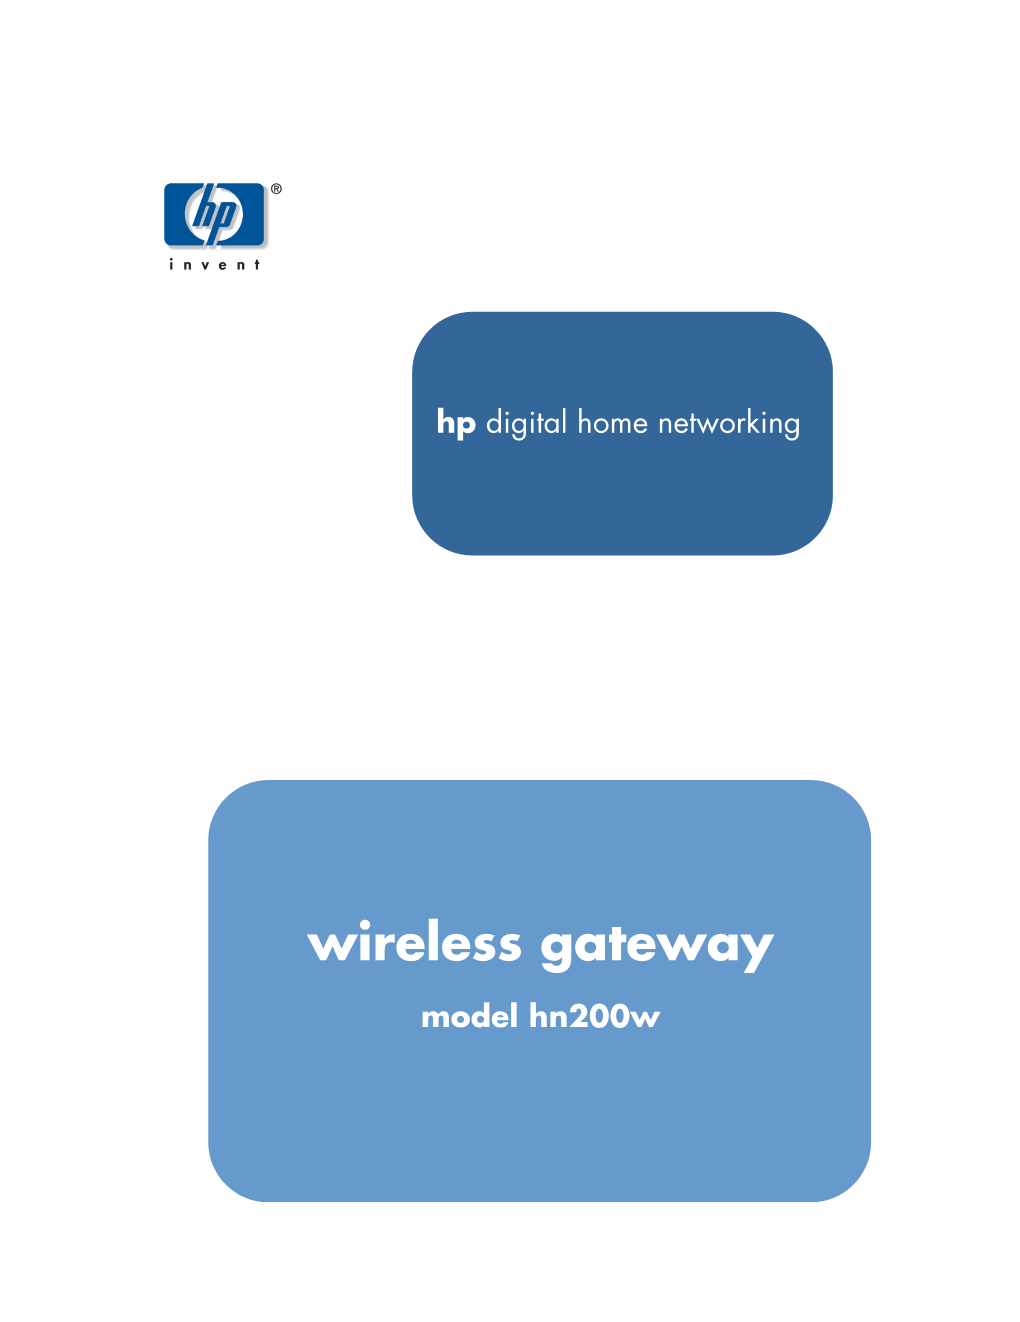 Wireless Gateway